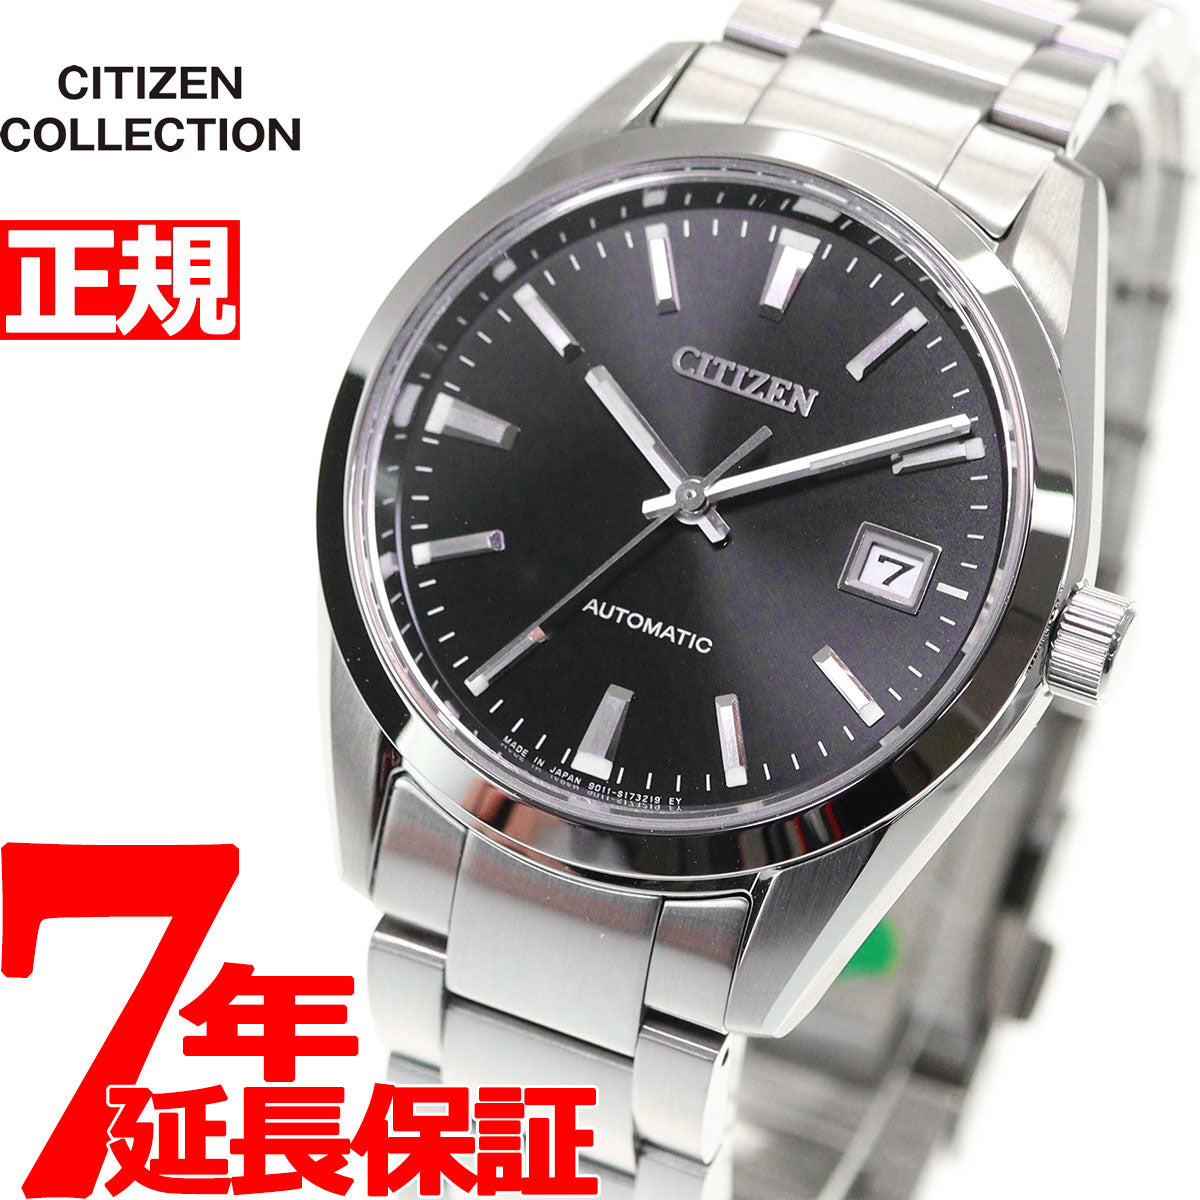 シチズンコレクション CITIZEN COLLECTION メカニカル 自動巻き 機械式 腕時計 メンズ クラシカルライン NB1050-5 –  neel selectshop